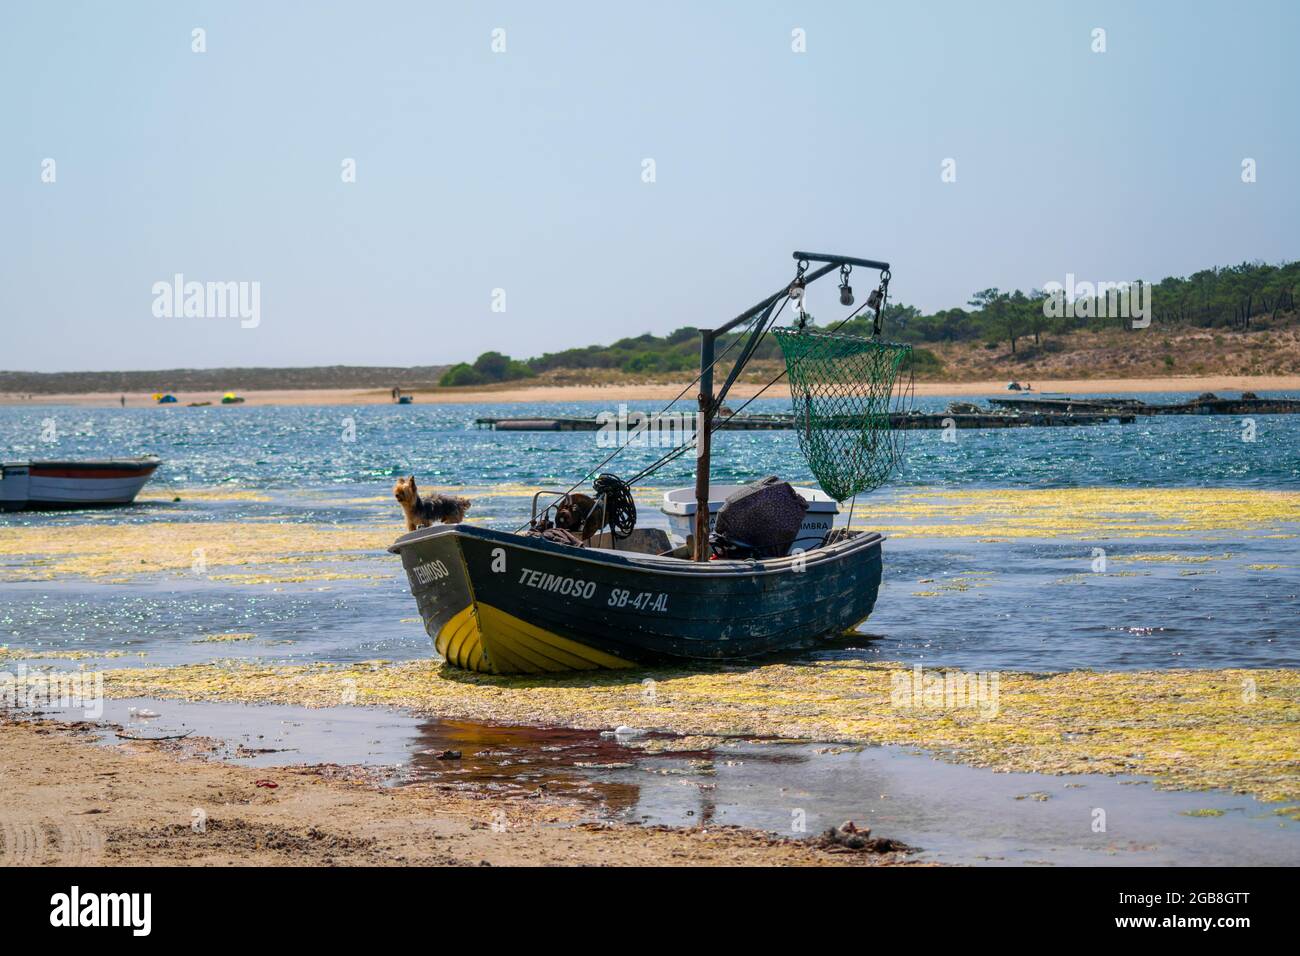 Hunde bei Arbeitsaktivitäten, kleiner Hund in einem Fischerboot, blaues und gelbes Boot. Treuer Hund comanding Fischerboot, Tier auf Arbeitstätigkeiten. Stockfoto